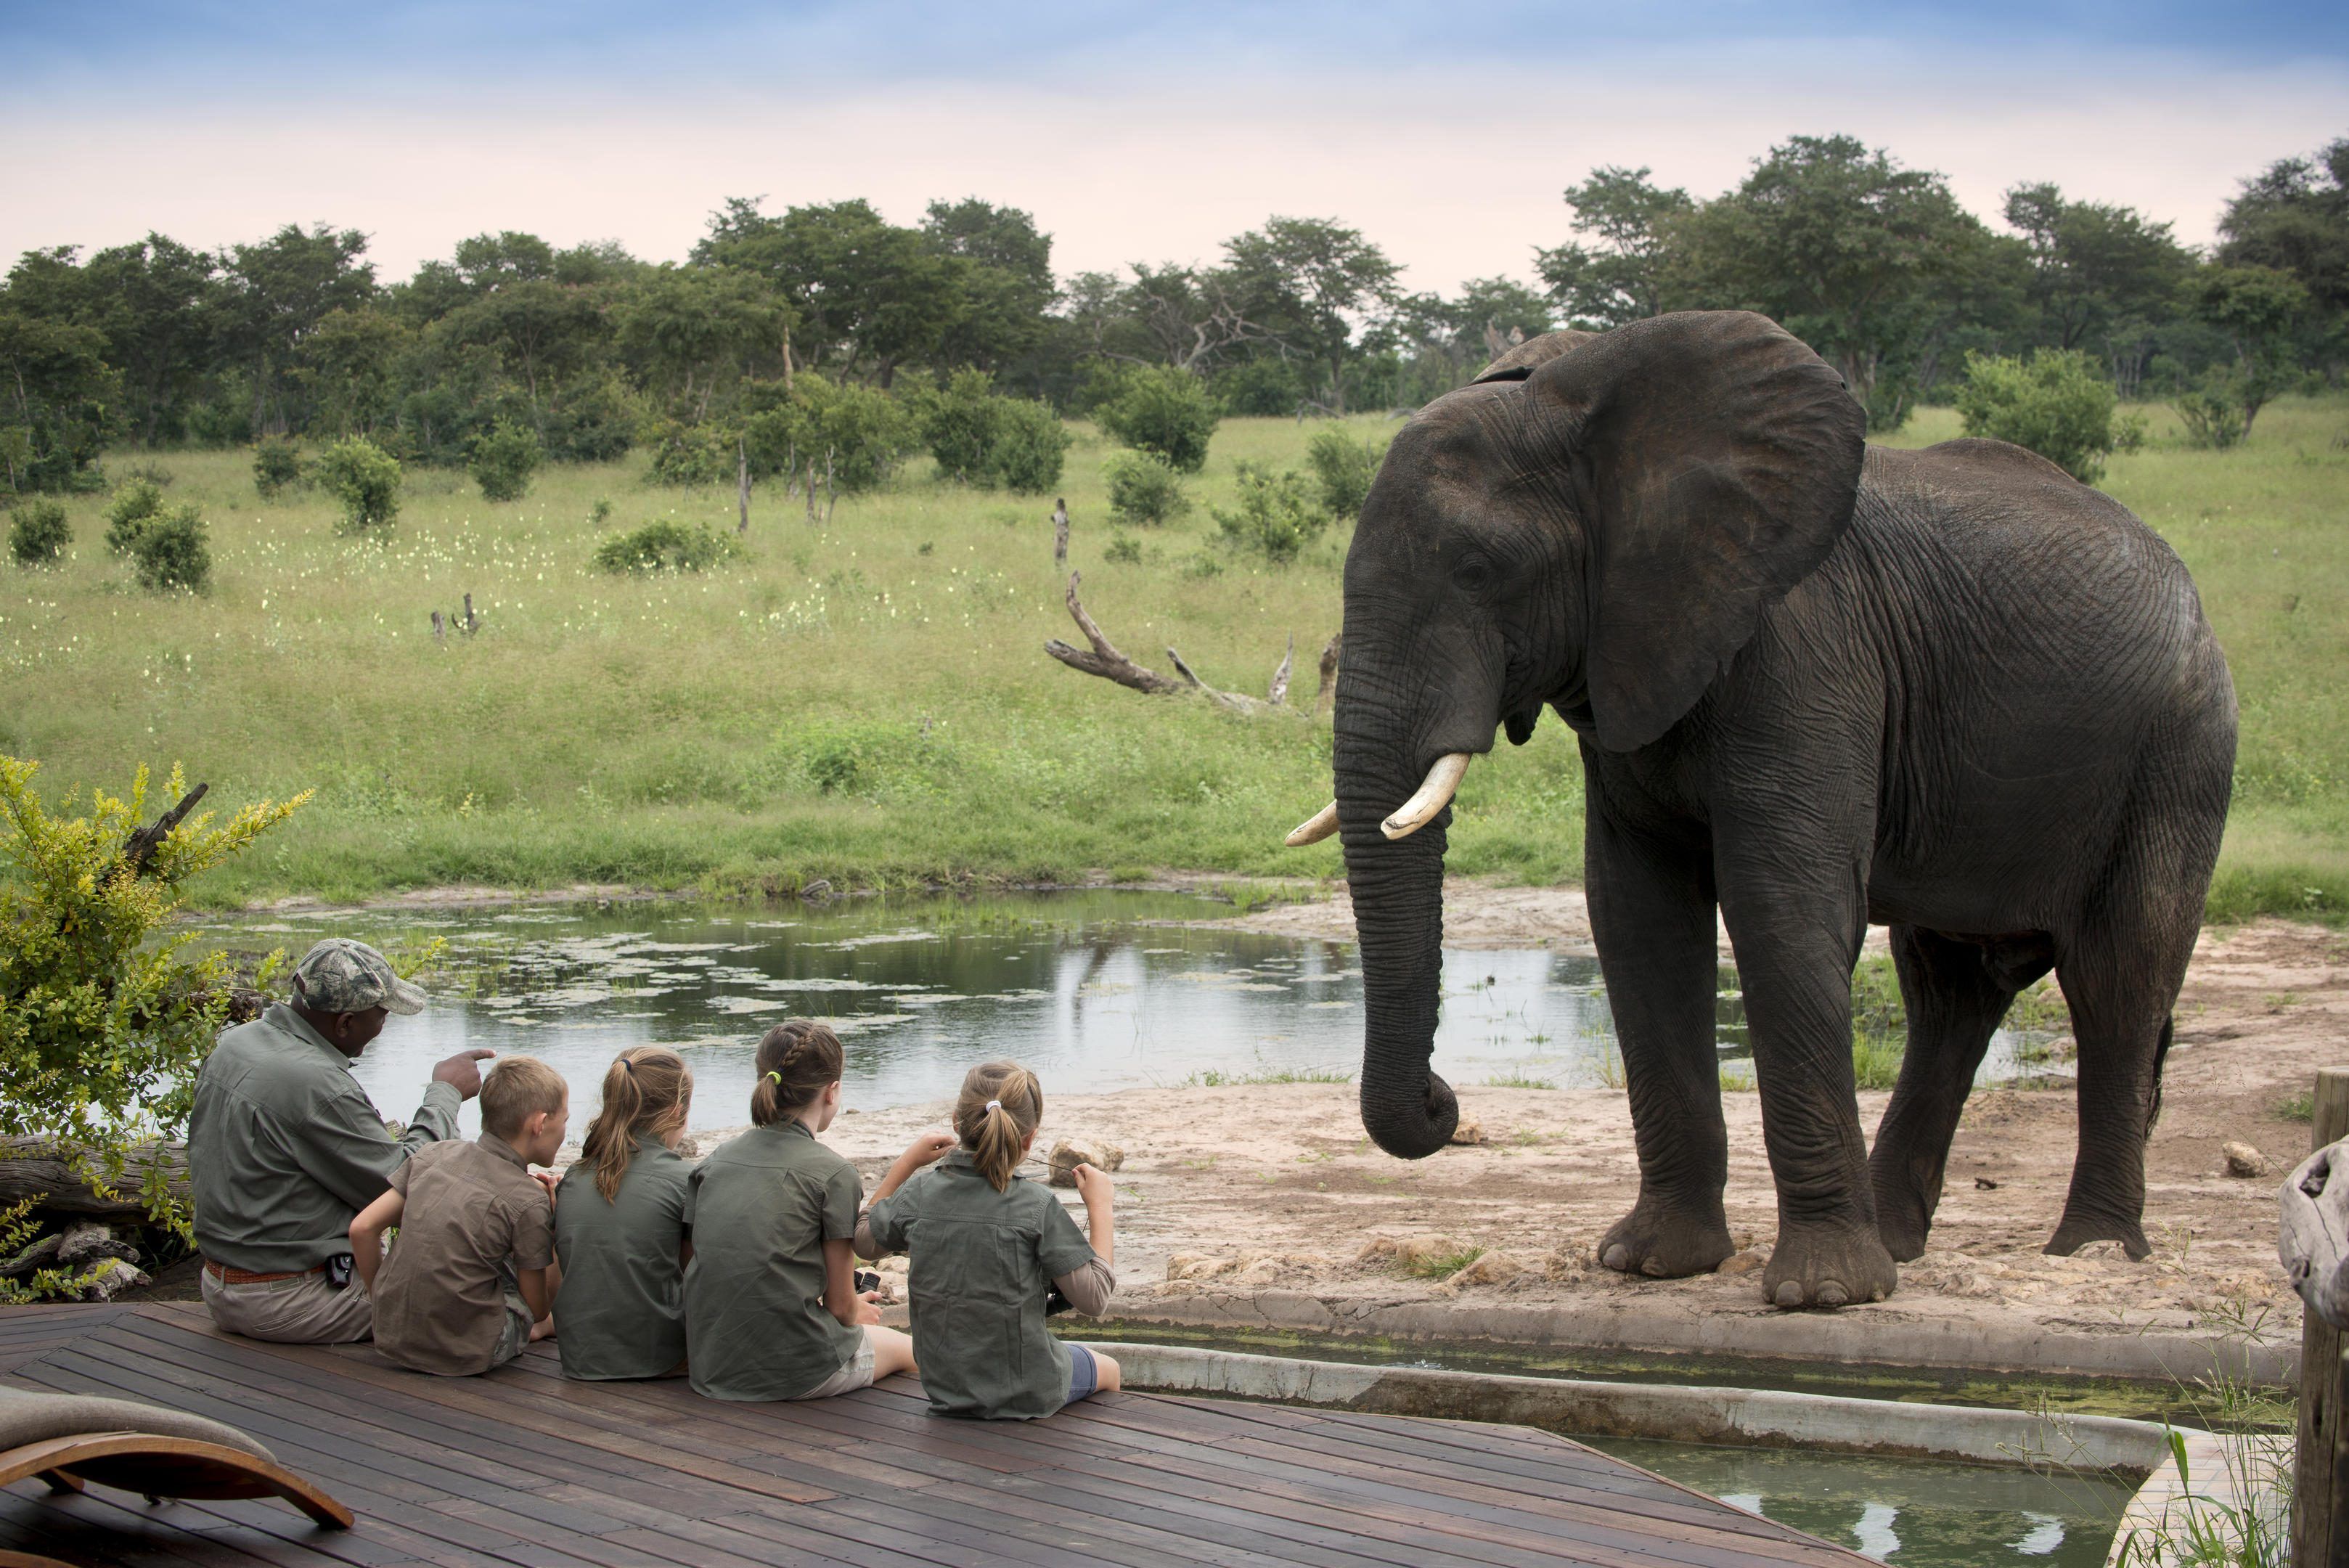 The Elephant Experience at Somalisa Acacia